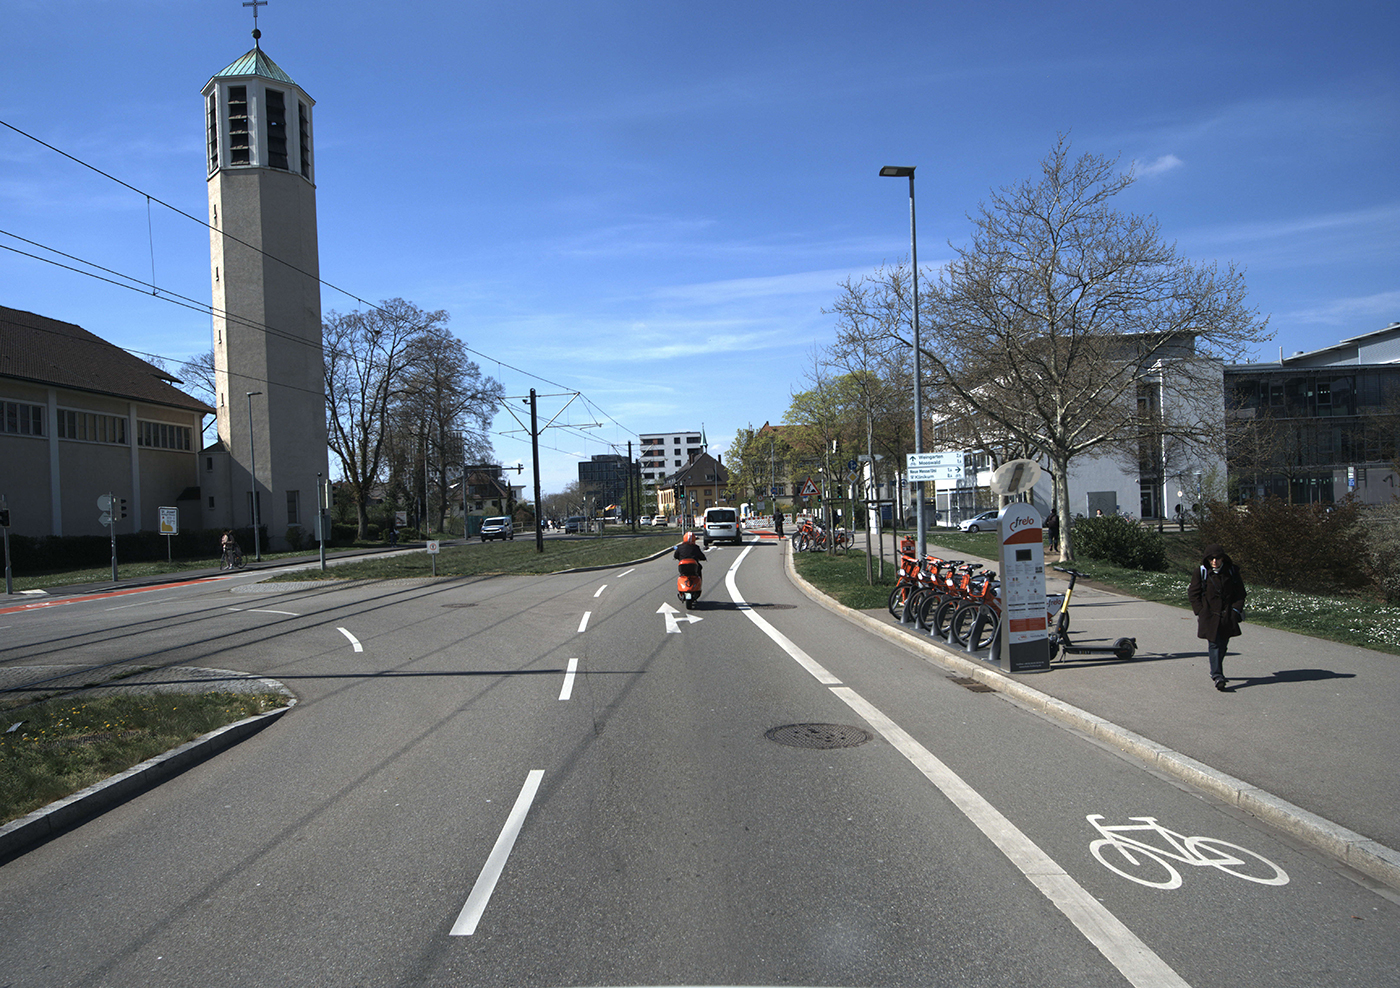 Vermessung Straßenumfeld mithilfe von Laserscanner und Kameras